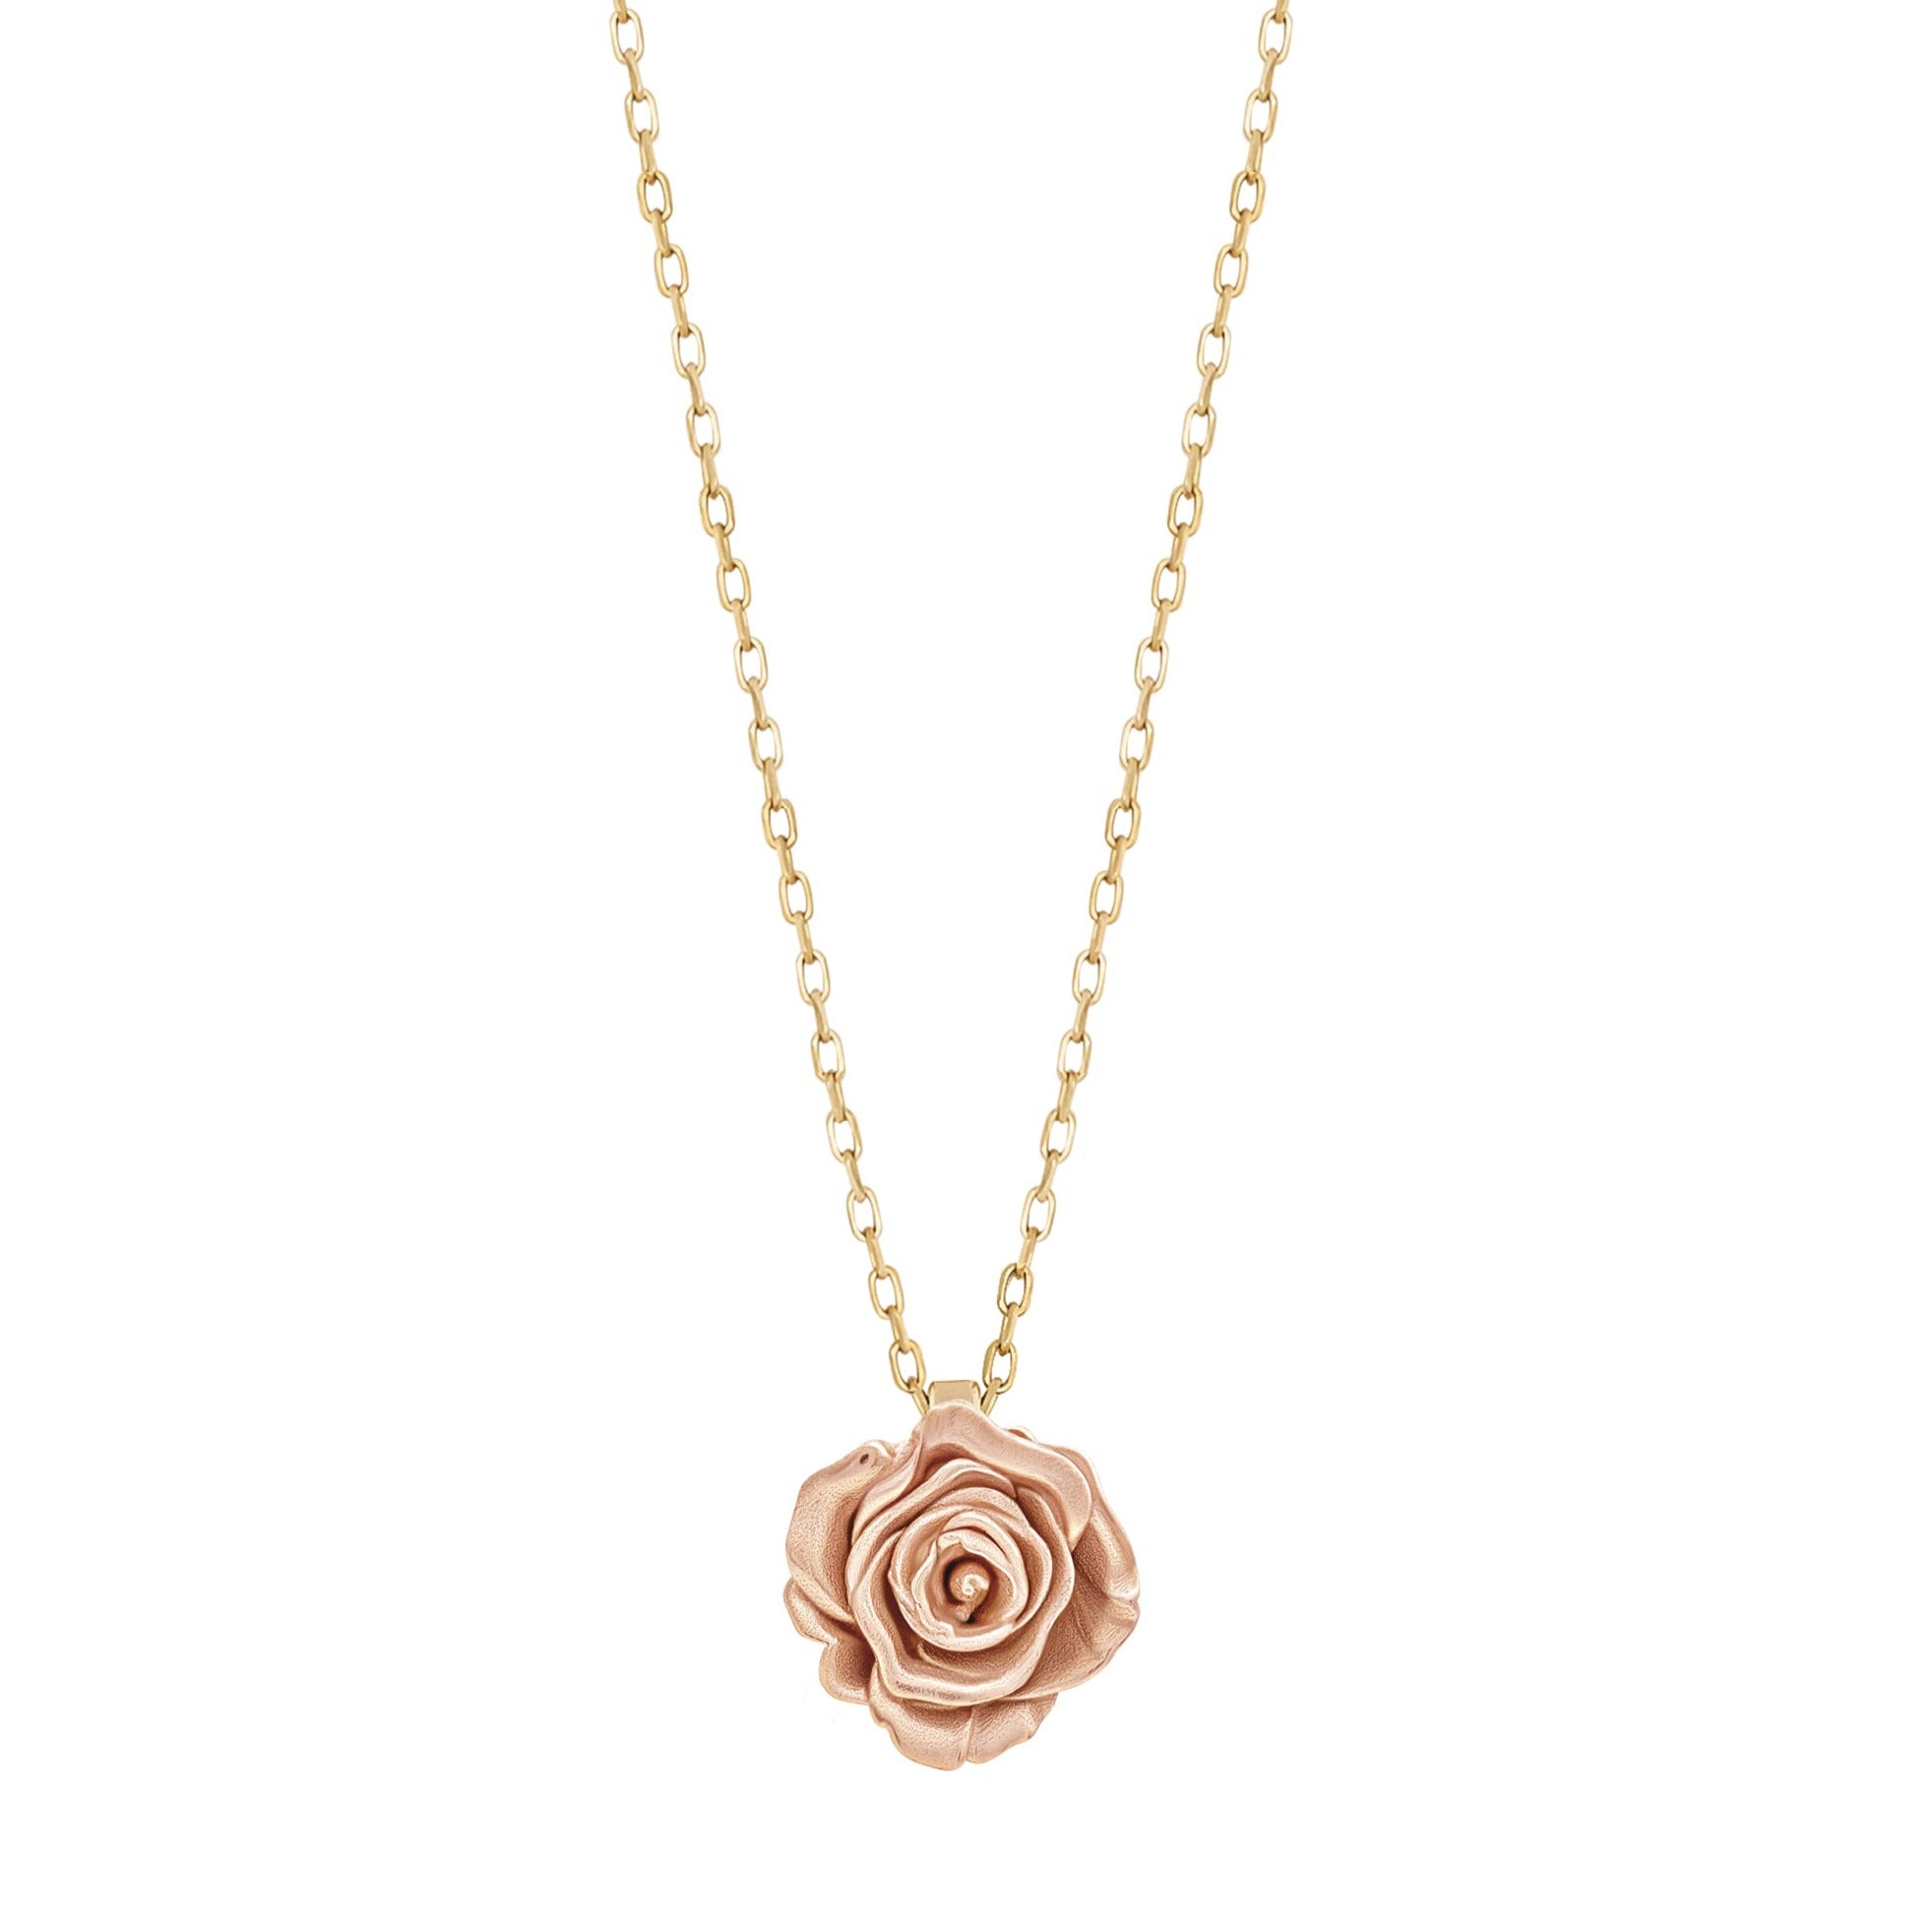 Maxi Rosa Single Charm Necklace